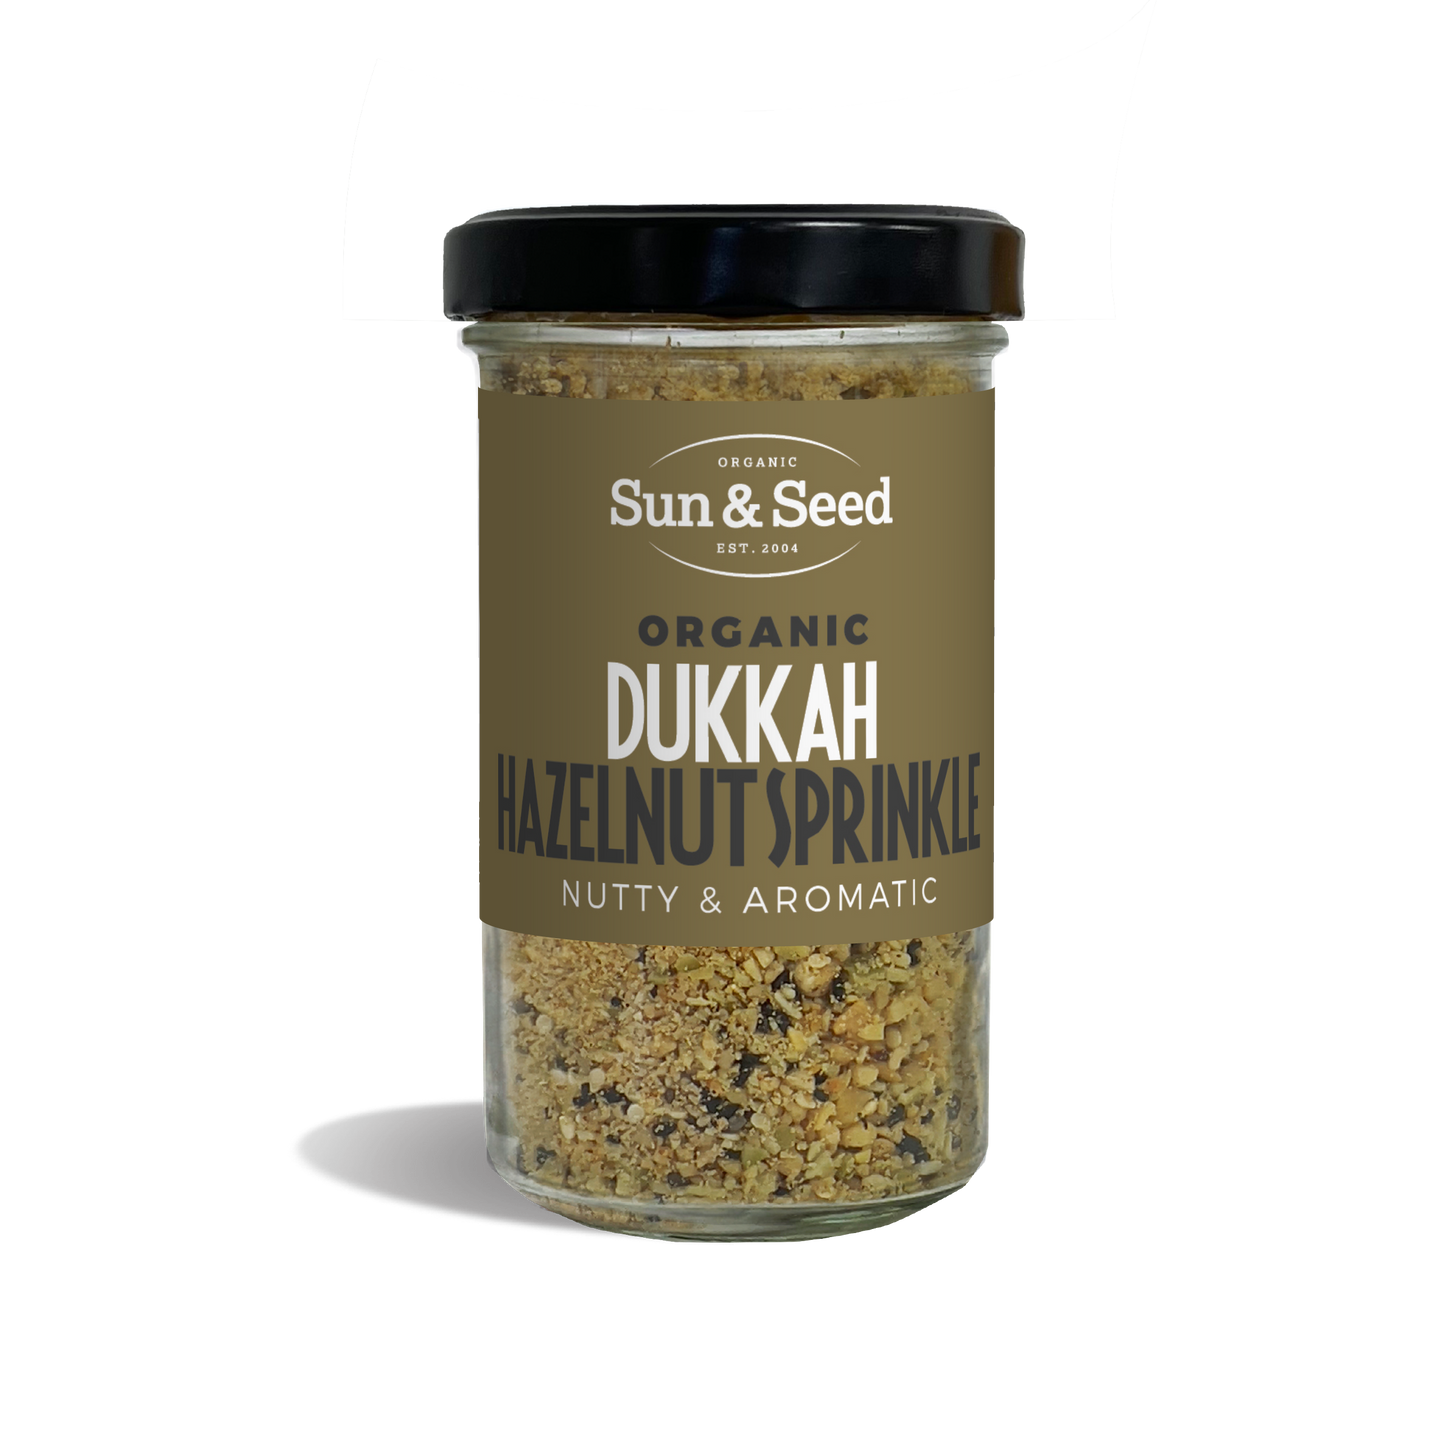 Organic Dukkah - Hazelnut Sprinkle 120g